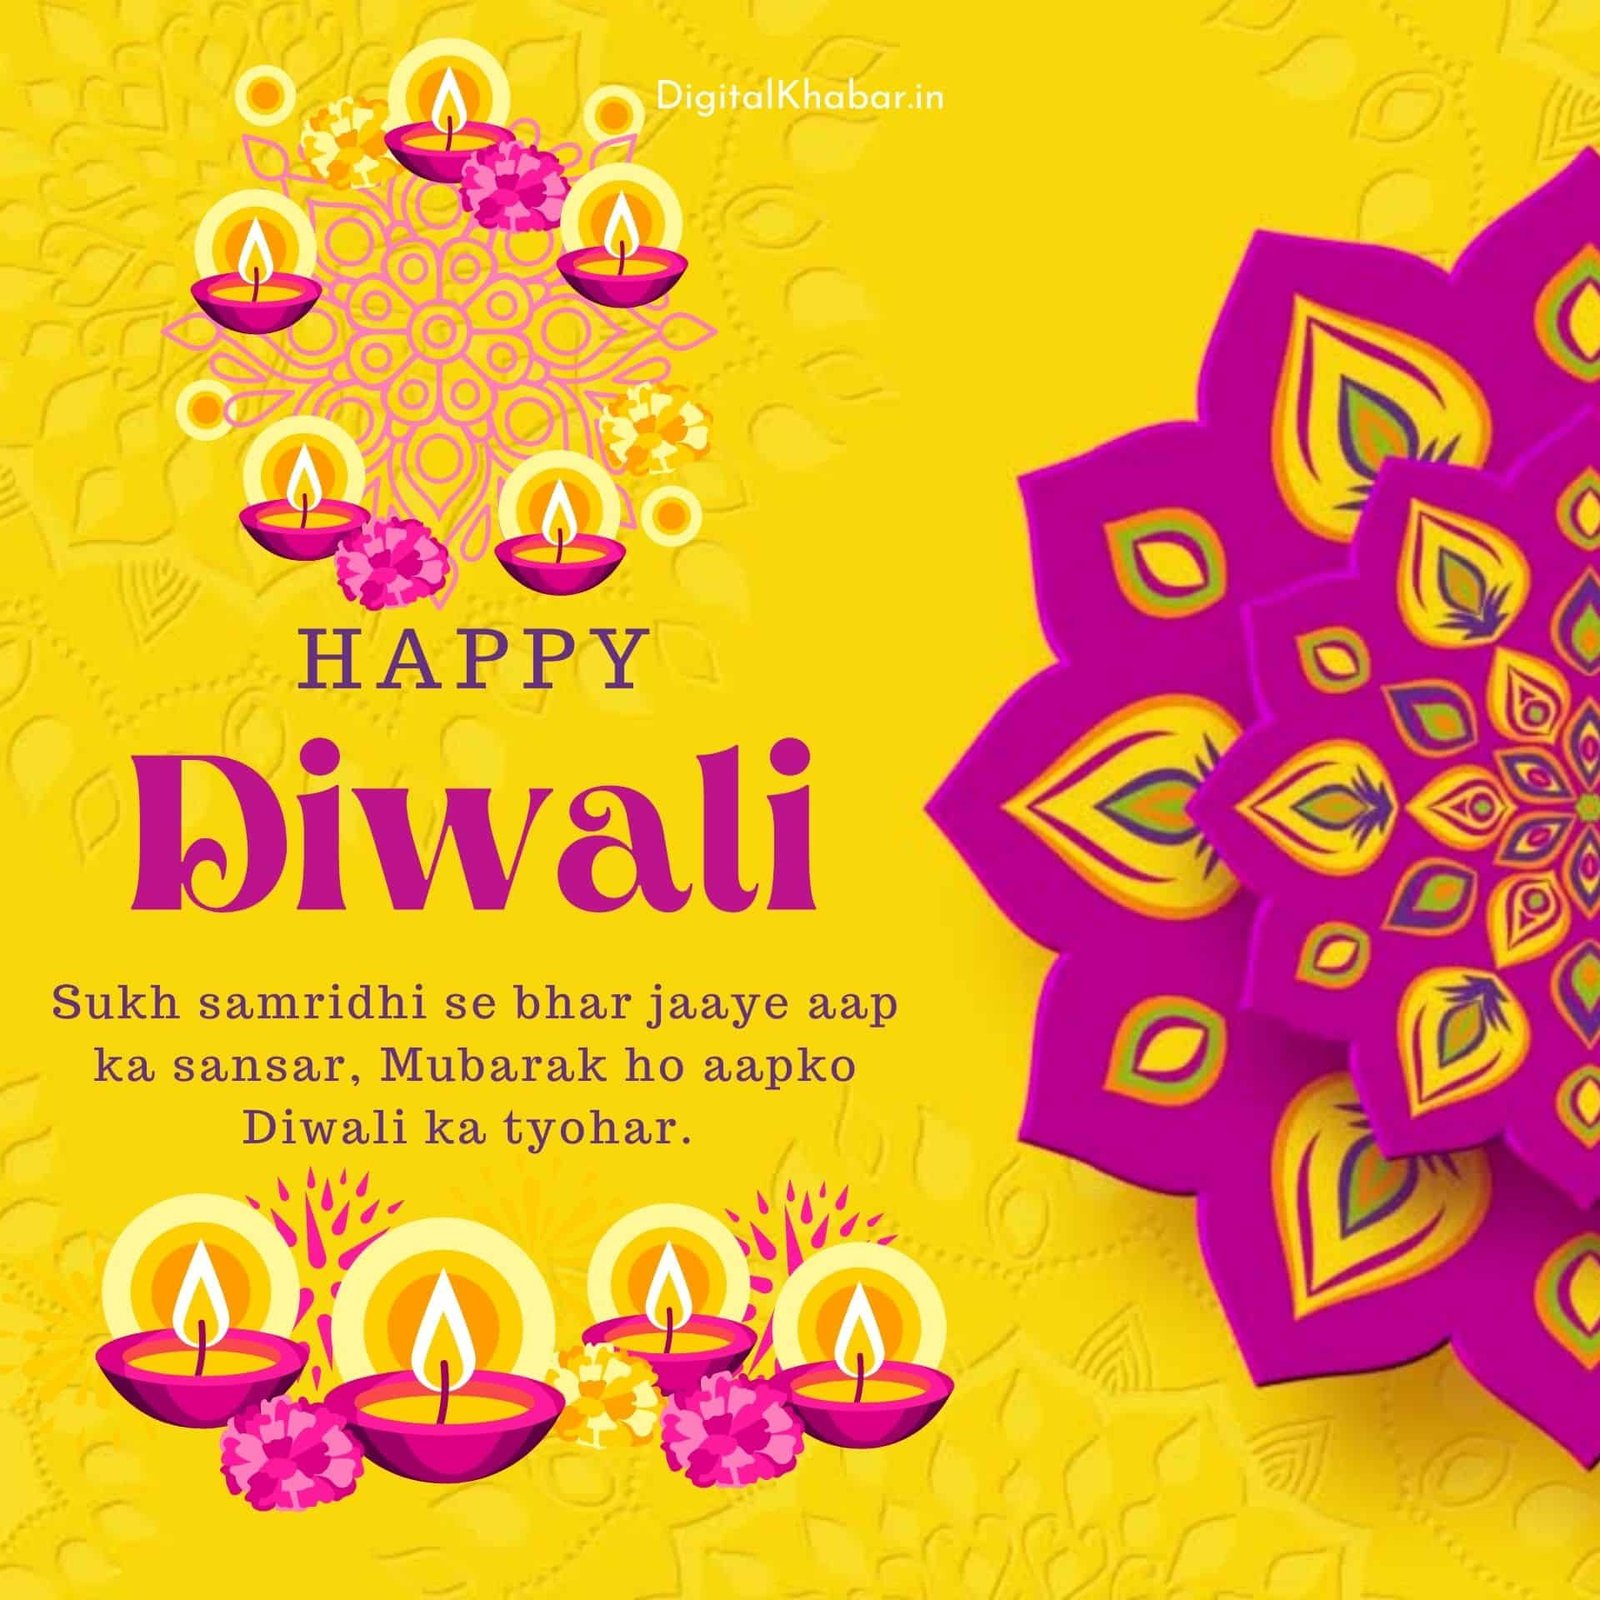 Happy Diwali, diwali ka tayohar